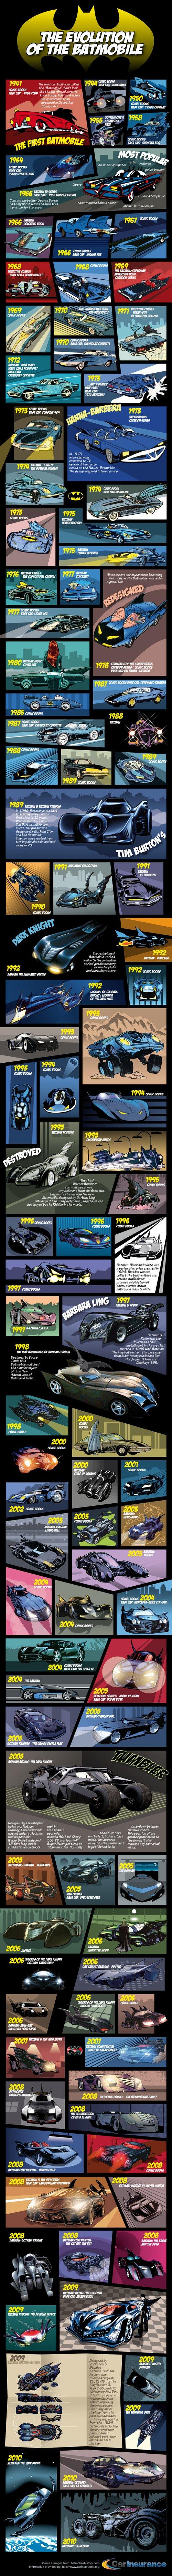 La evolución del Batmóvil (1966-2010)